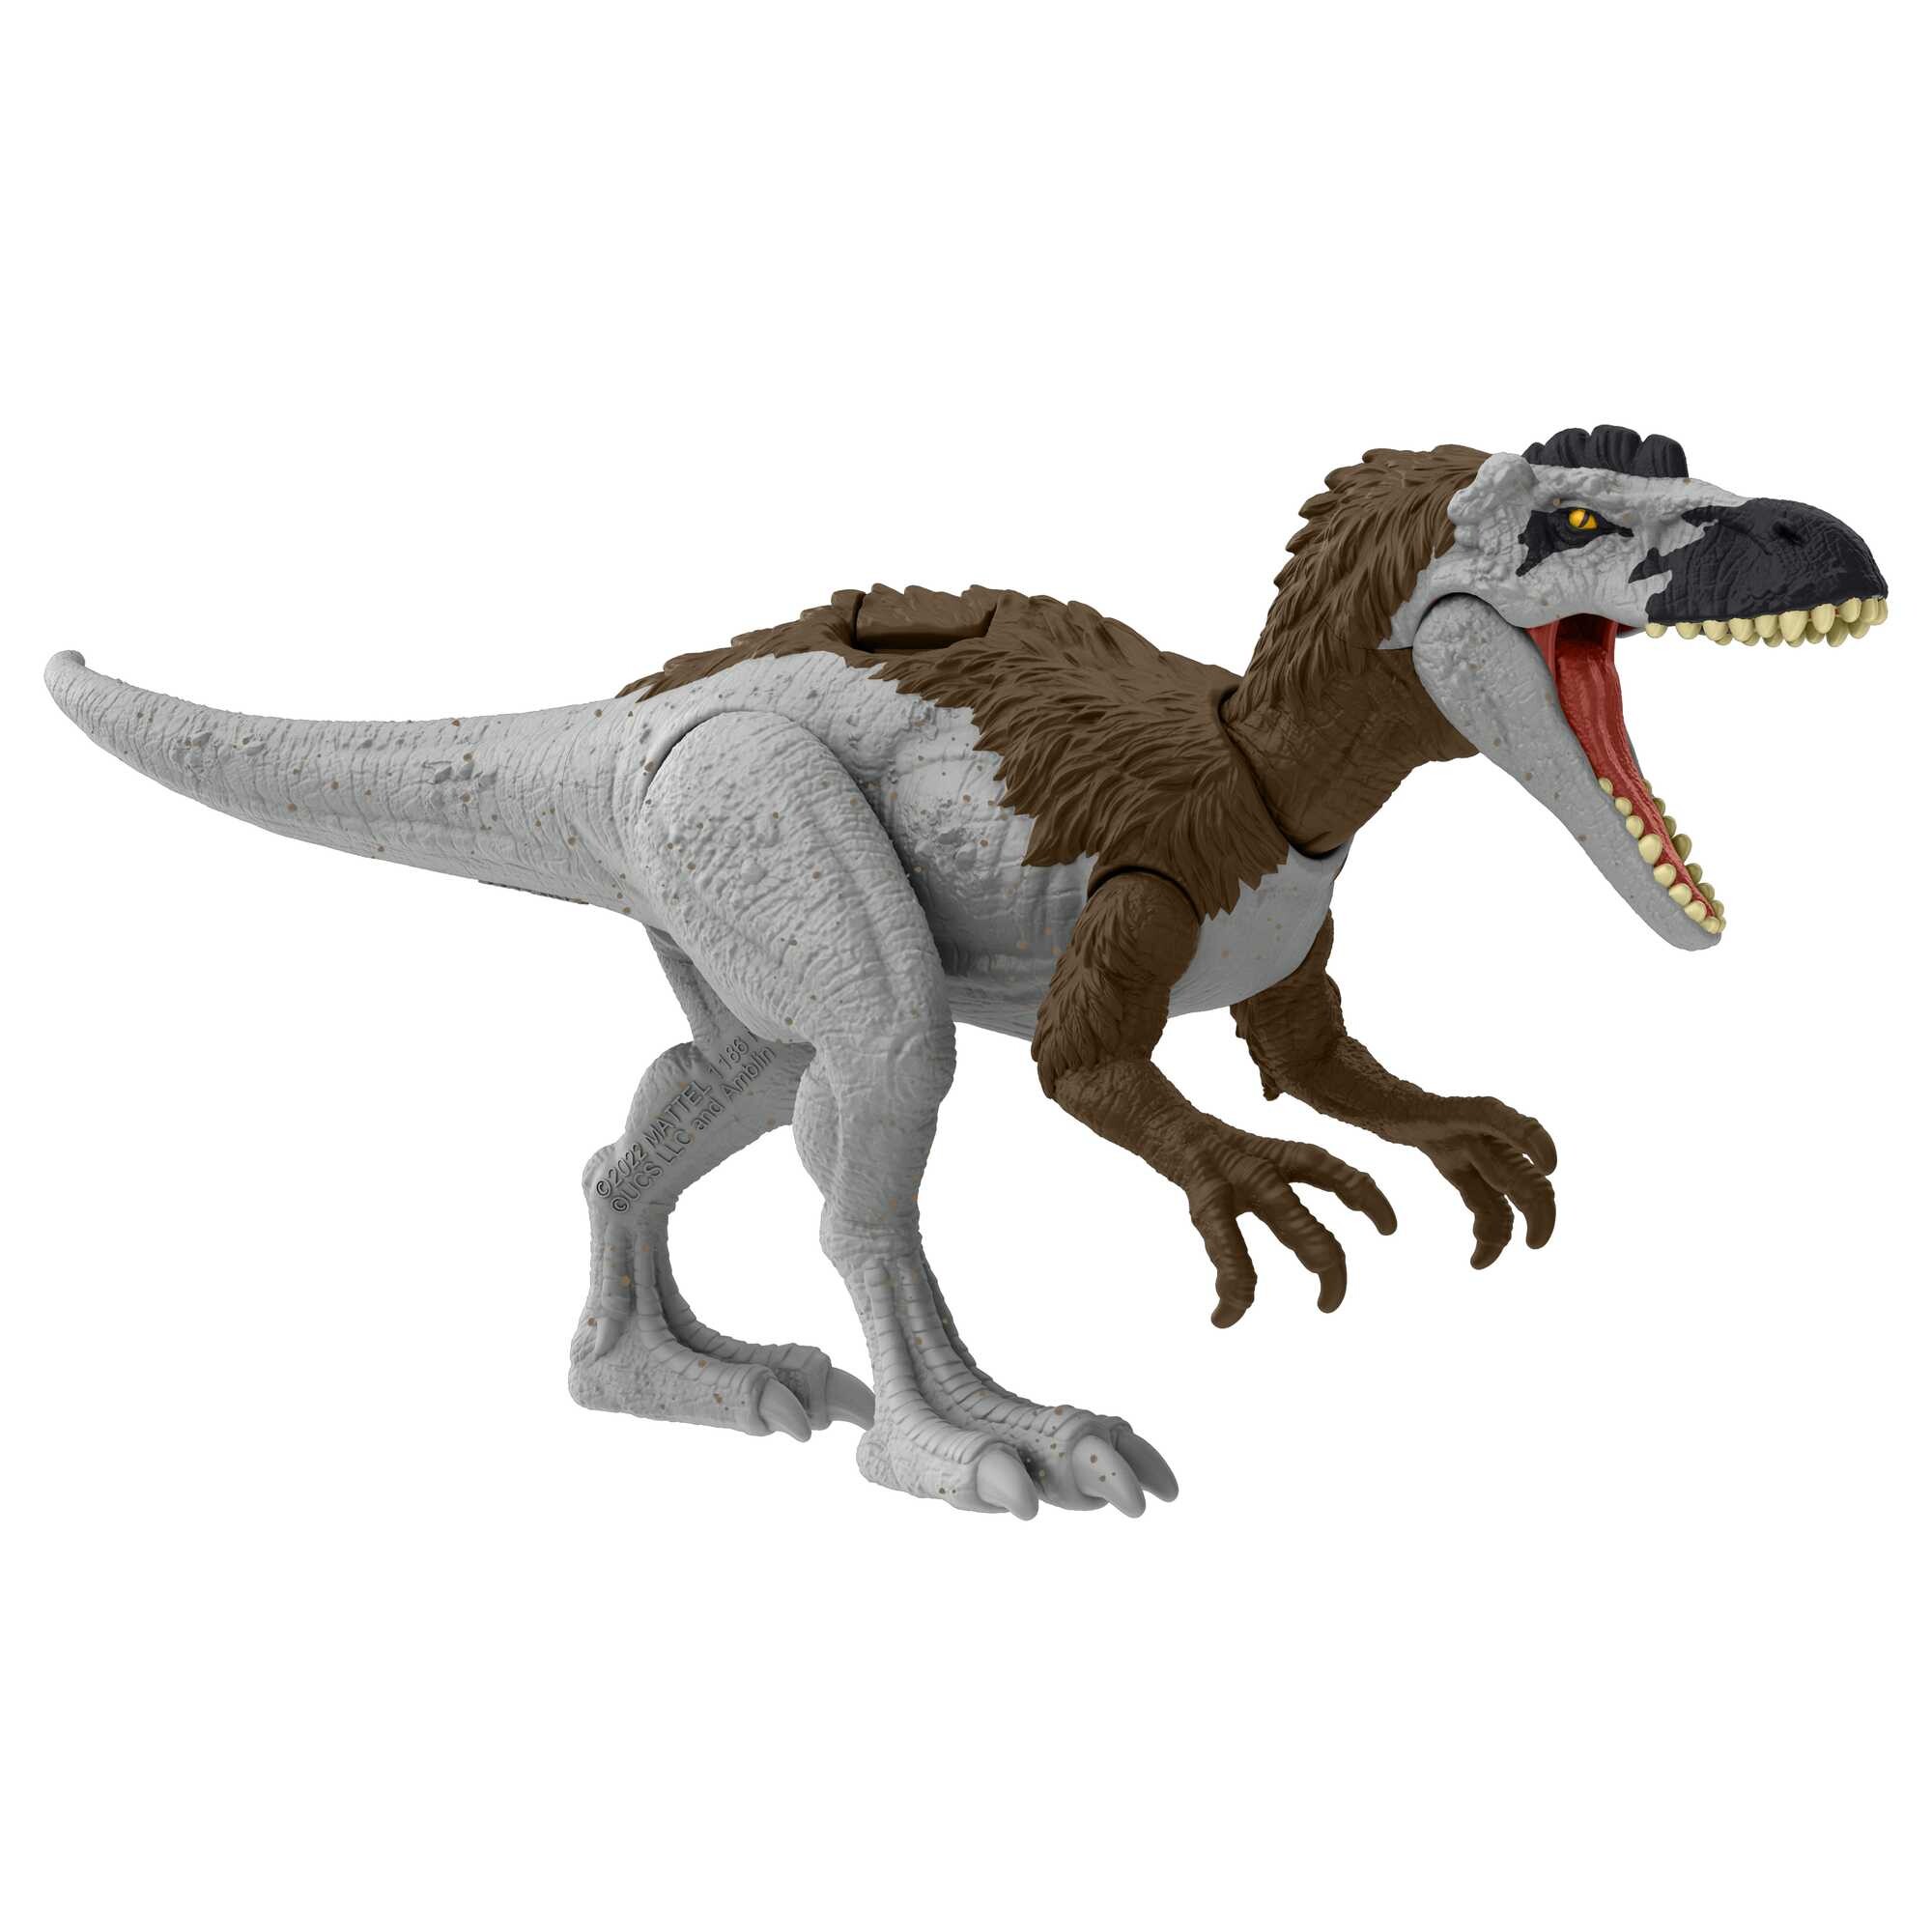 Jurassic world pericolo giurassico - xuanhanosauro , dinosauro snodato con design autentico, specie di medie dimensioni lungo 18 cm e alto 7+ cm - Jurassic World